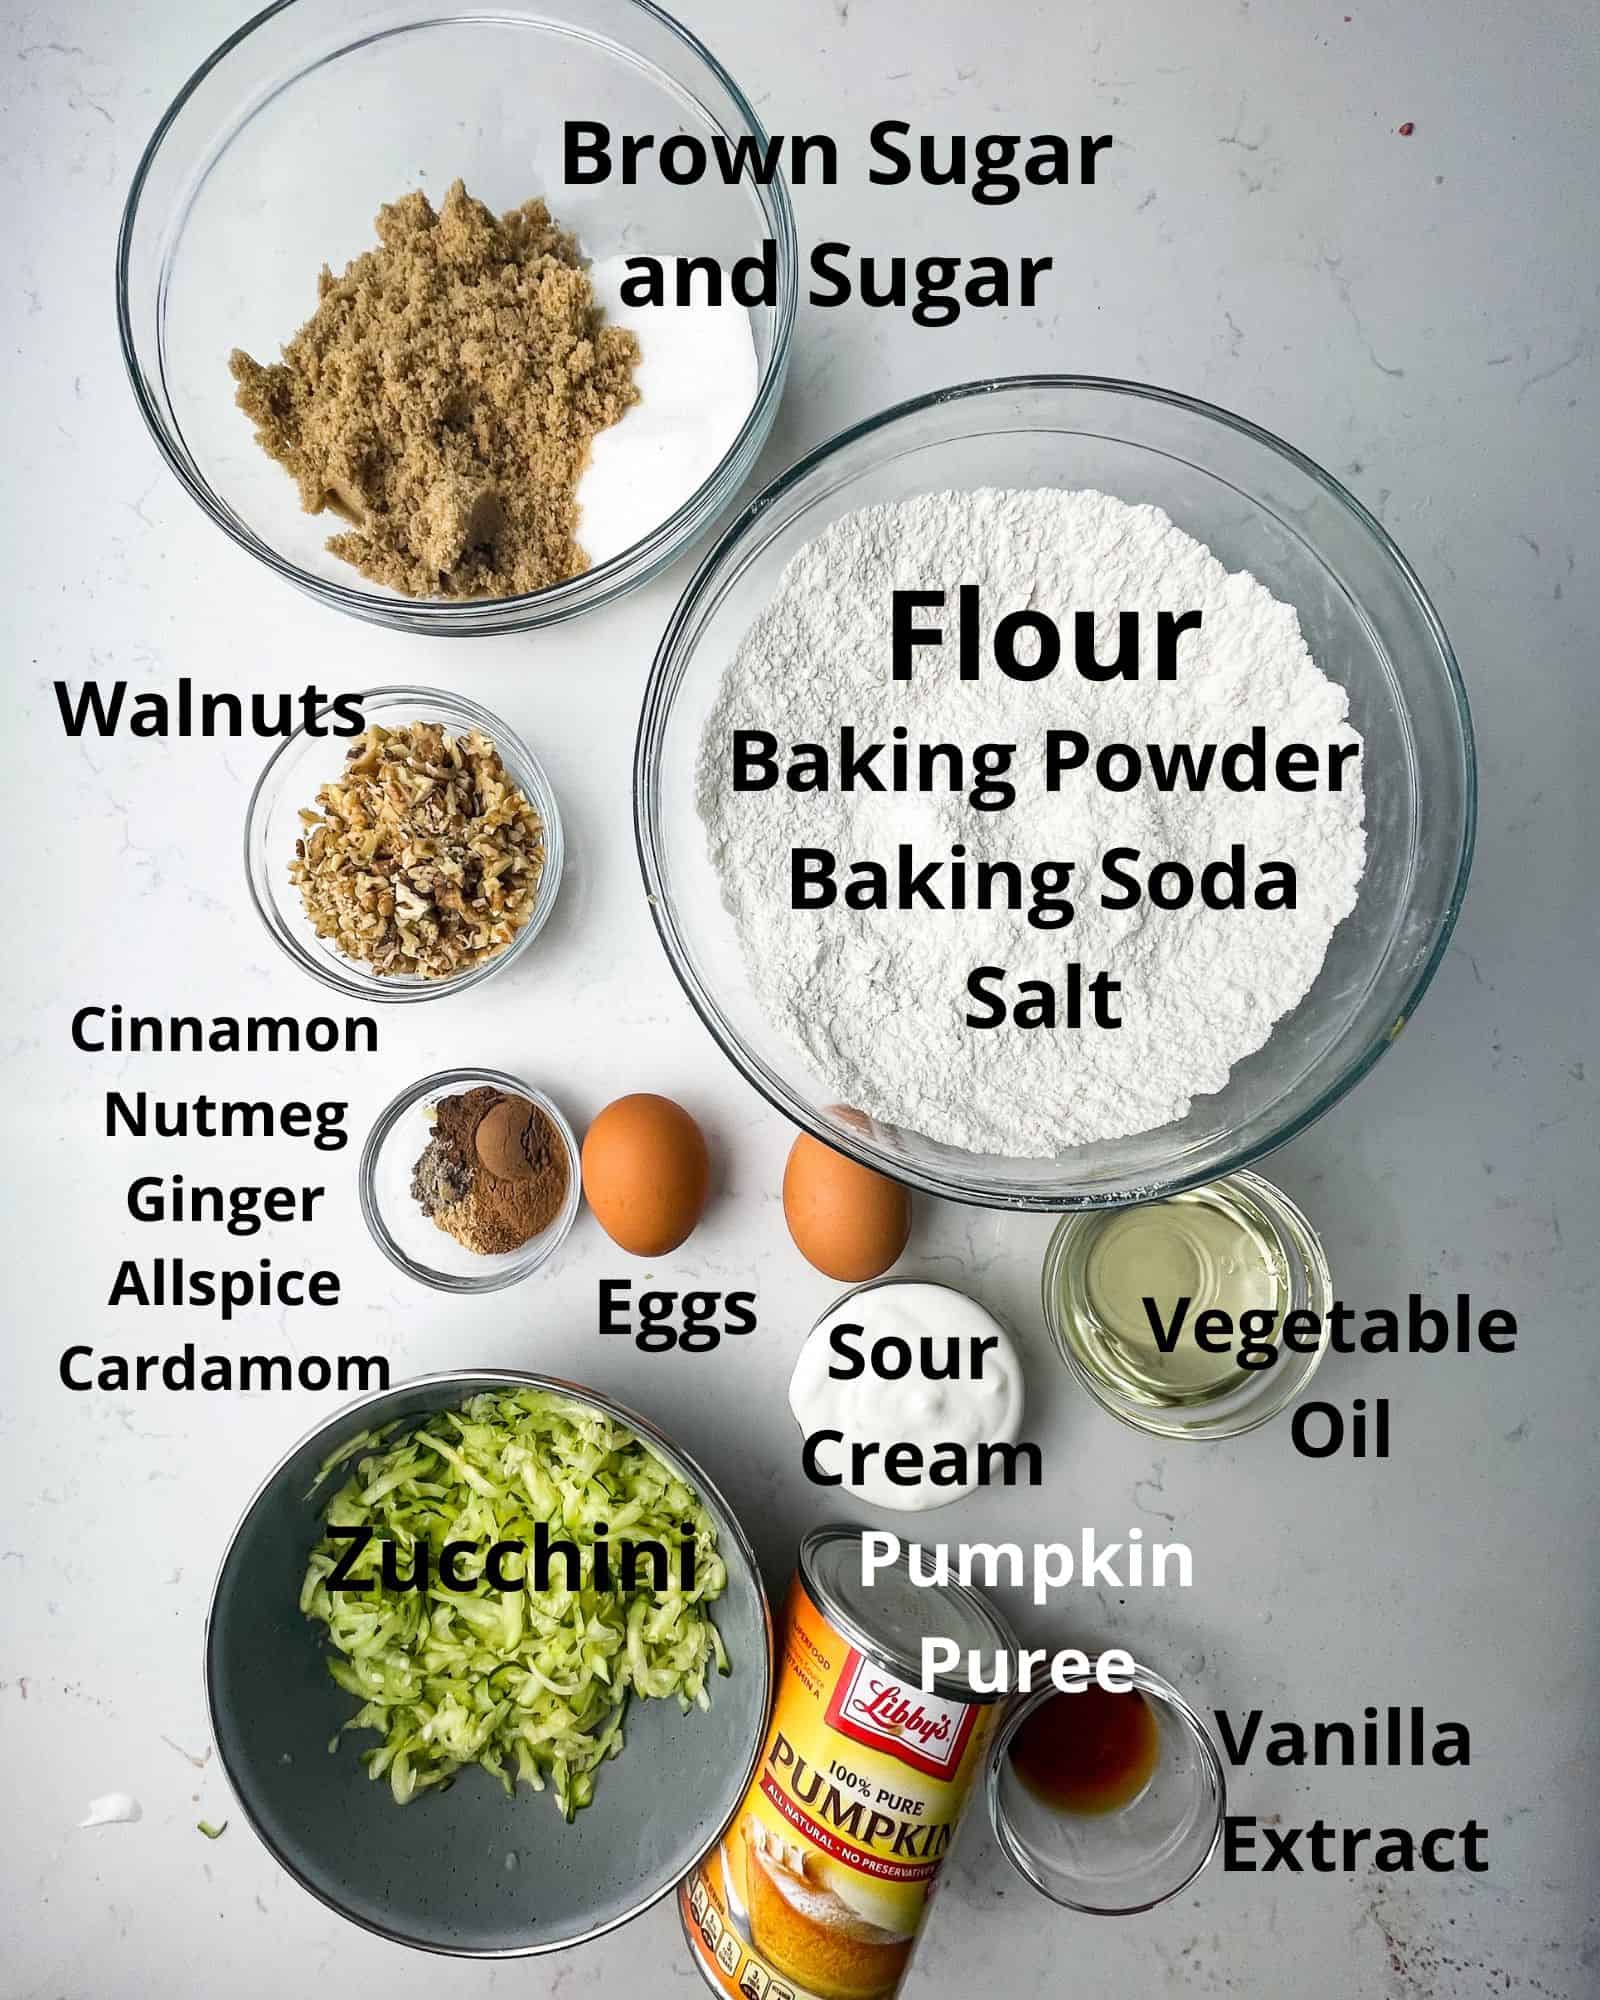 ingredients to make zucchini pumpkin muffins - flour, baking soda, baking powder, salt, cinnamon, nutmeg, ground ginger, ground nutmeg, allspice, cardamom, brown sugar, sugar, vegetable oil, sour cream, eggs, vanilla extract, pumpkin puree, zucchini, and walnuts.